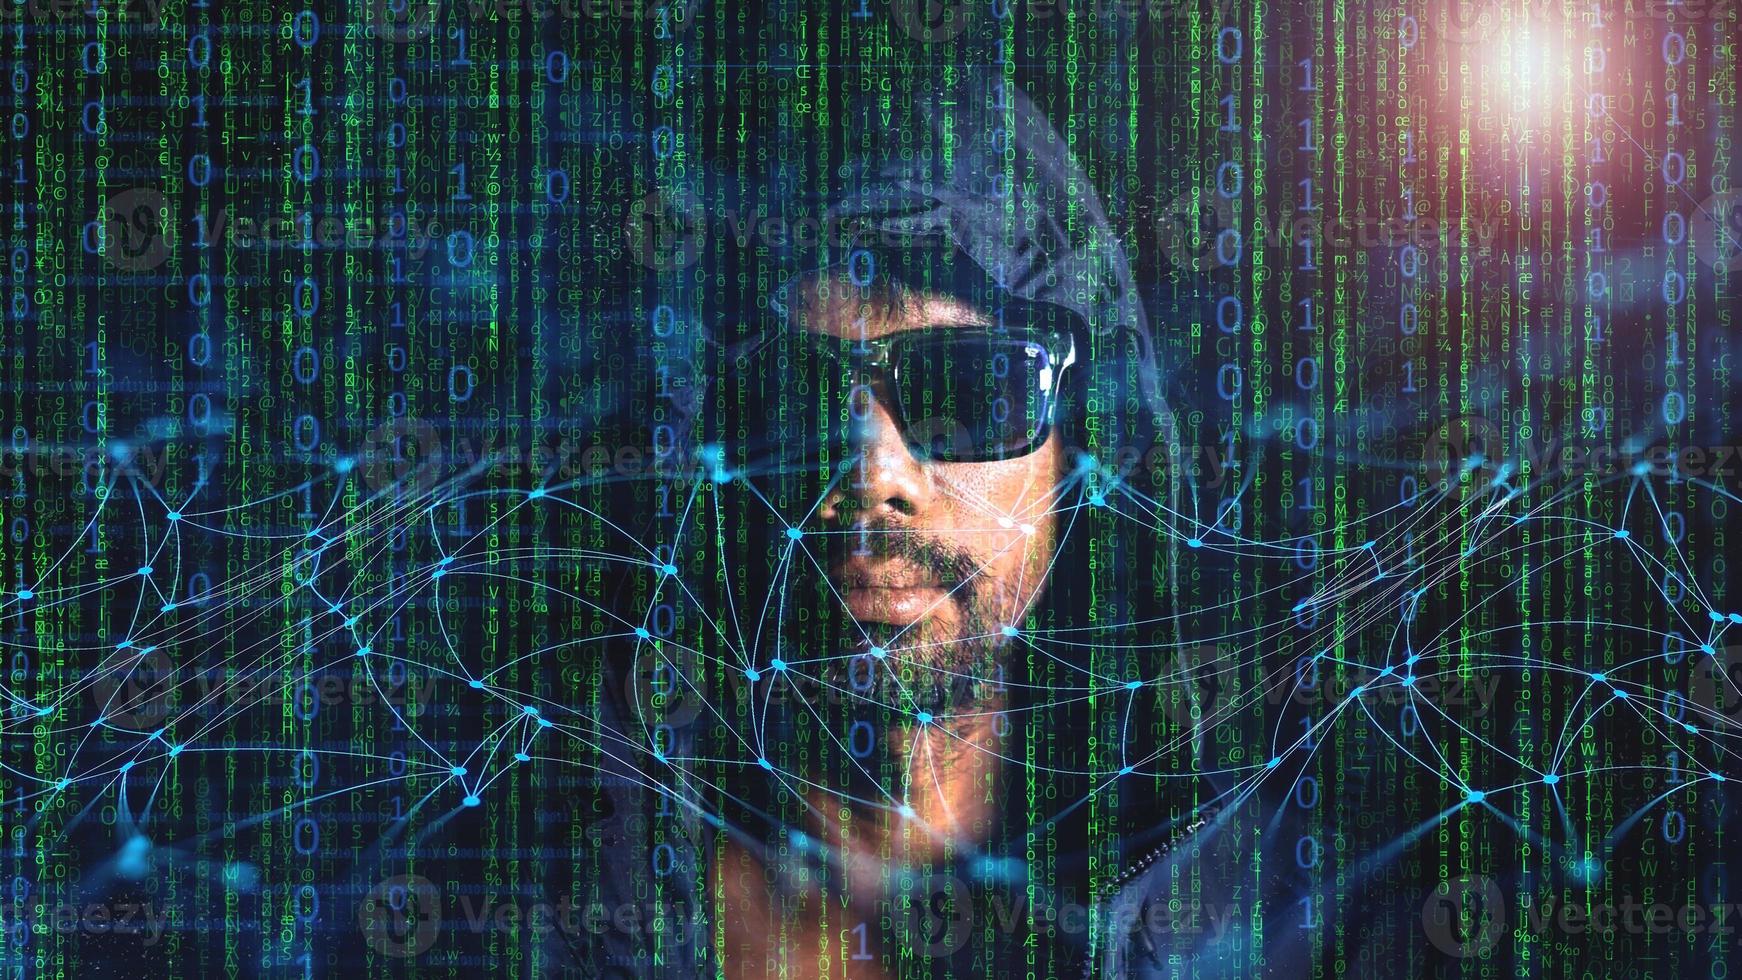 concepto de hackers y cyberpunk o robo de identidad de redes informáticas. un hombre que no confía en la tecnología foto